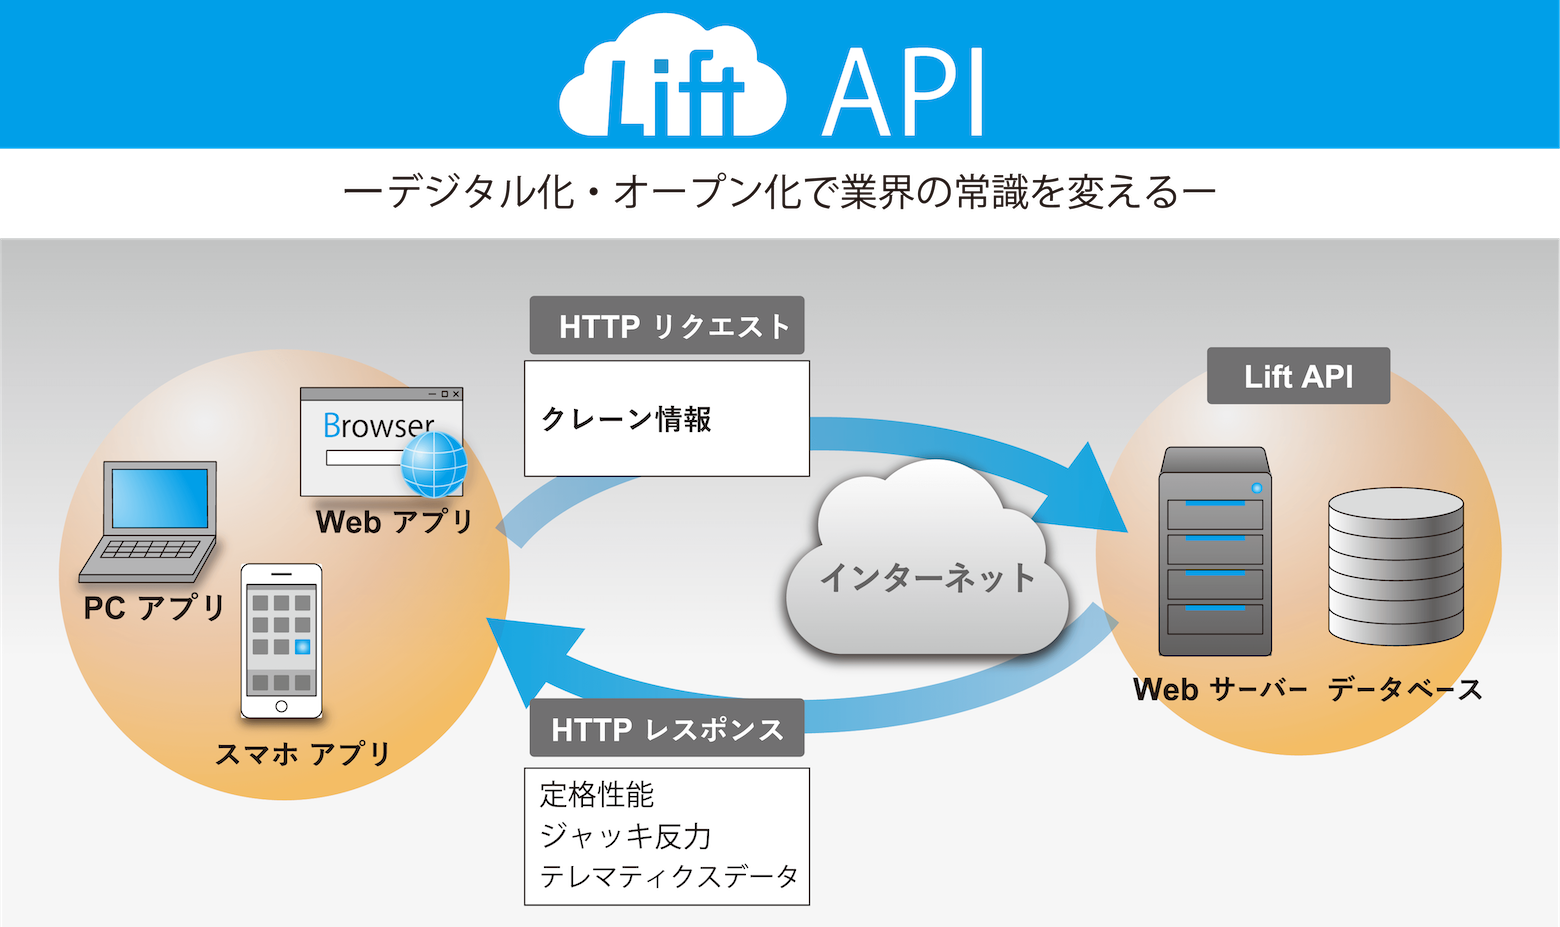 Lift API